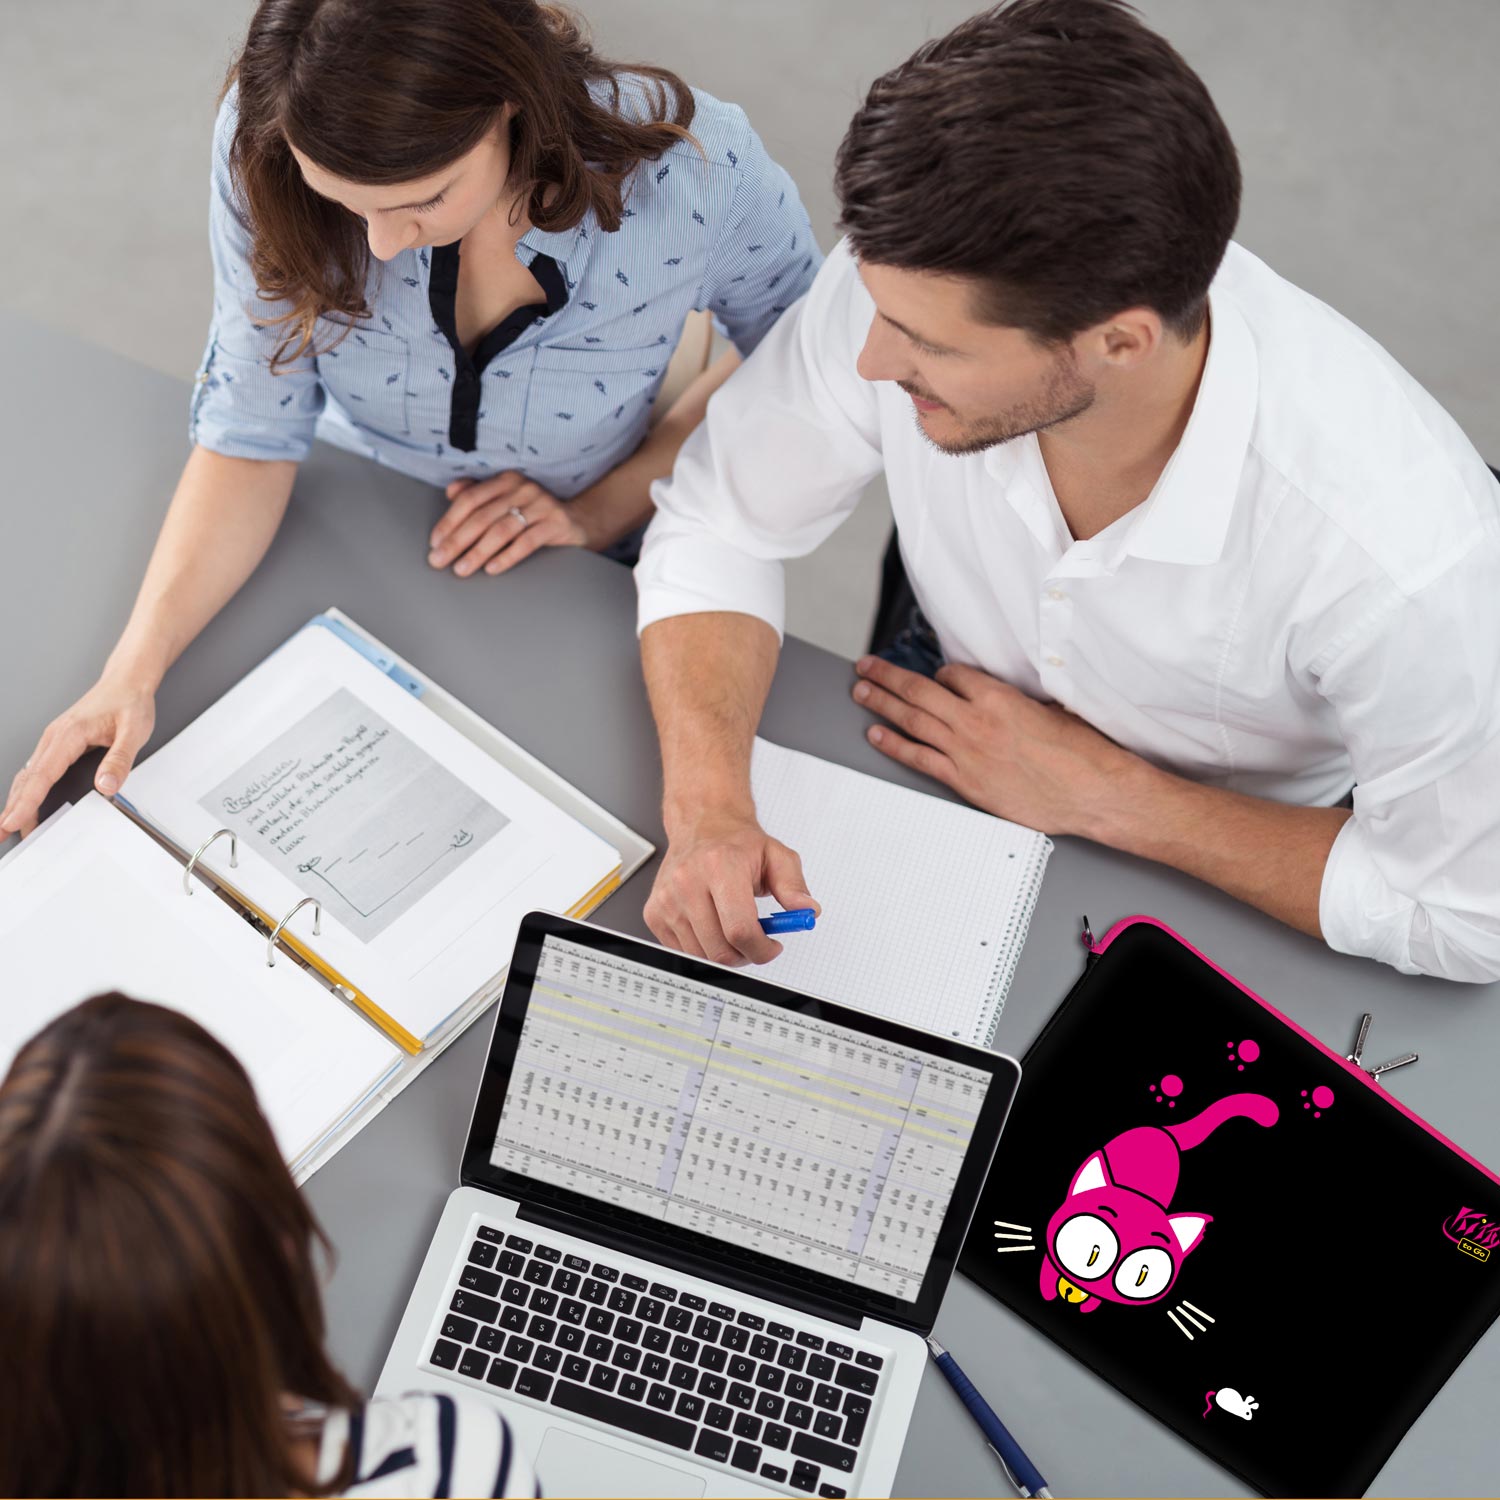 LS141 Kitty to Go Designer Laptop Schutzhülle in schwarz-pink als Business-Zubehör im Büro, bei Kunden und auf Dienstreisen